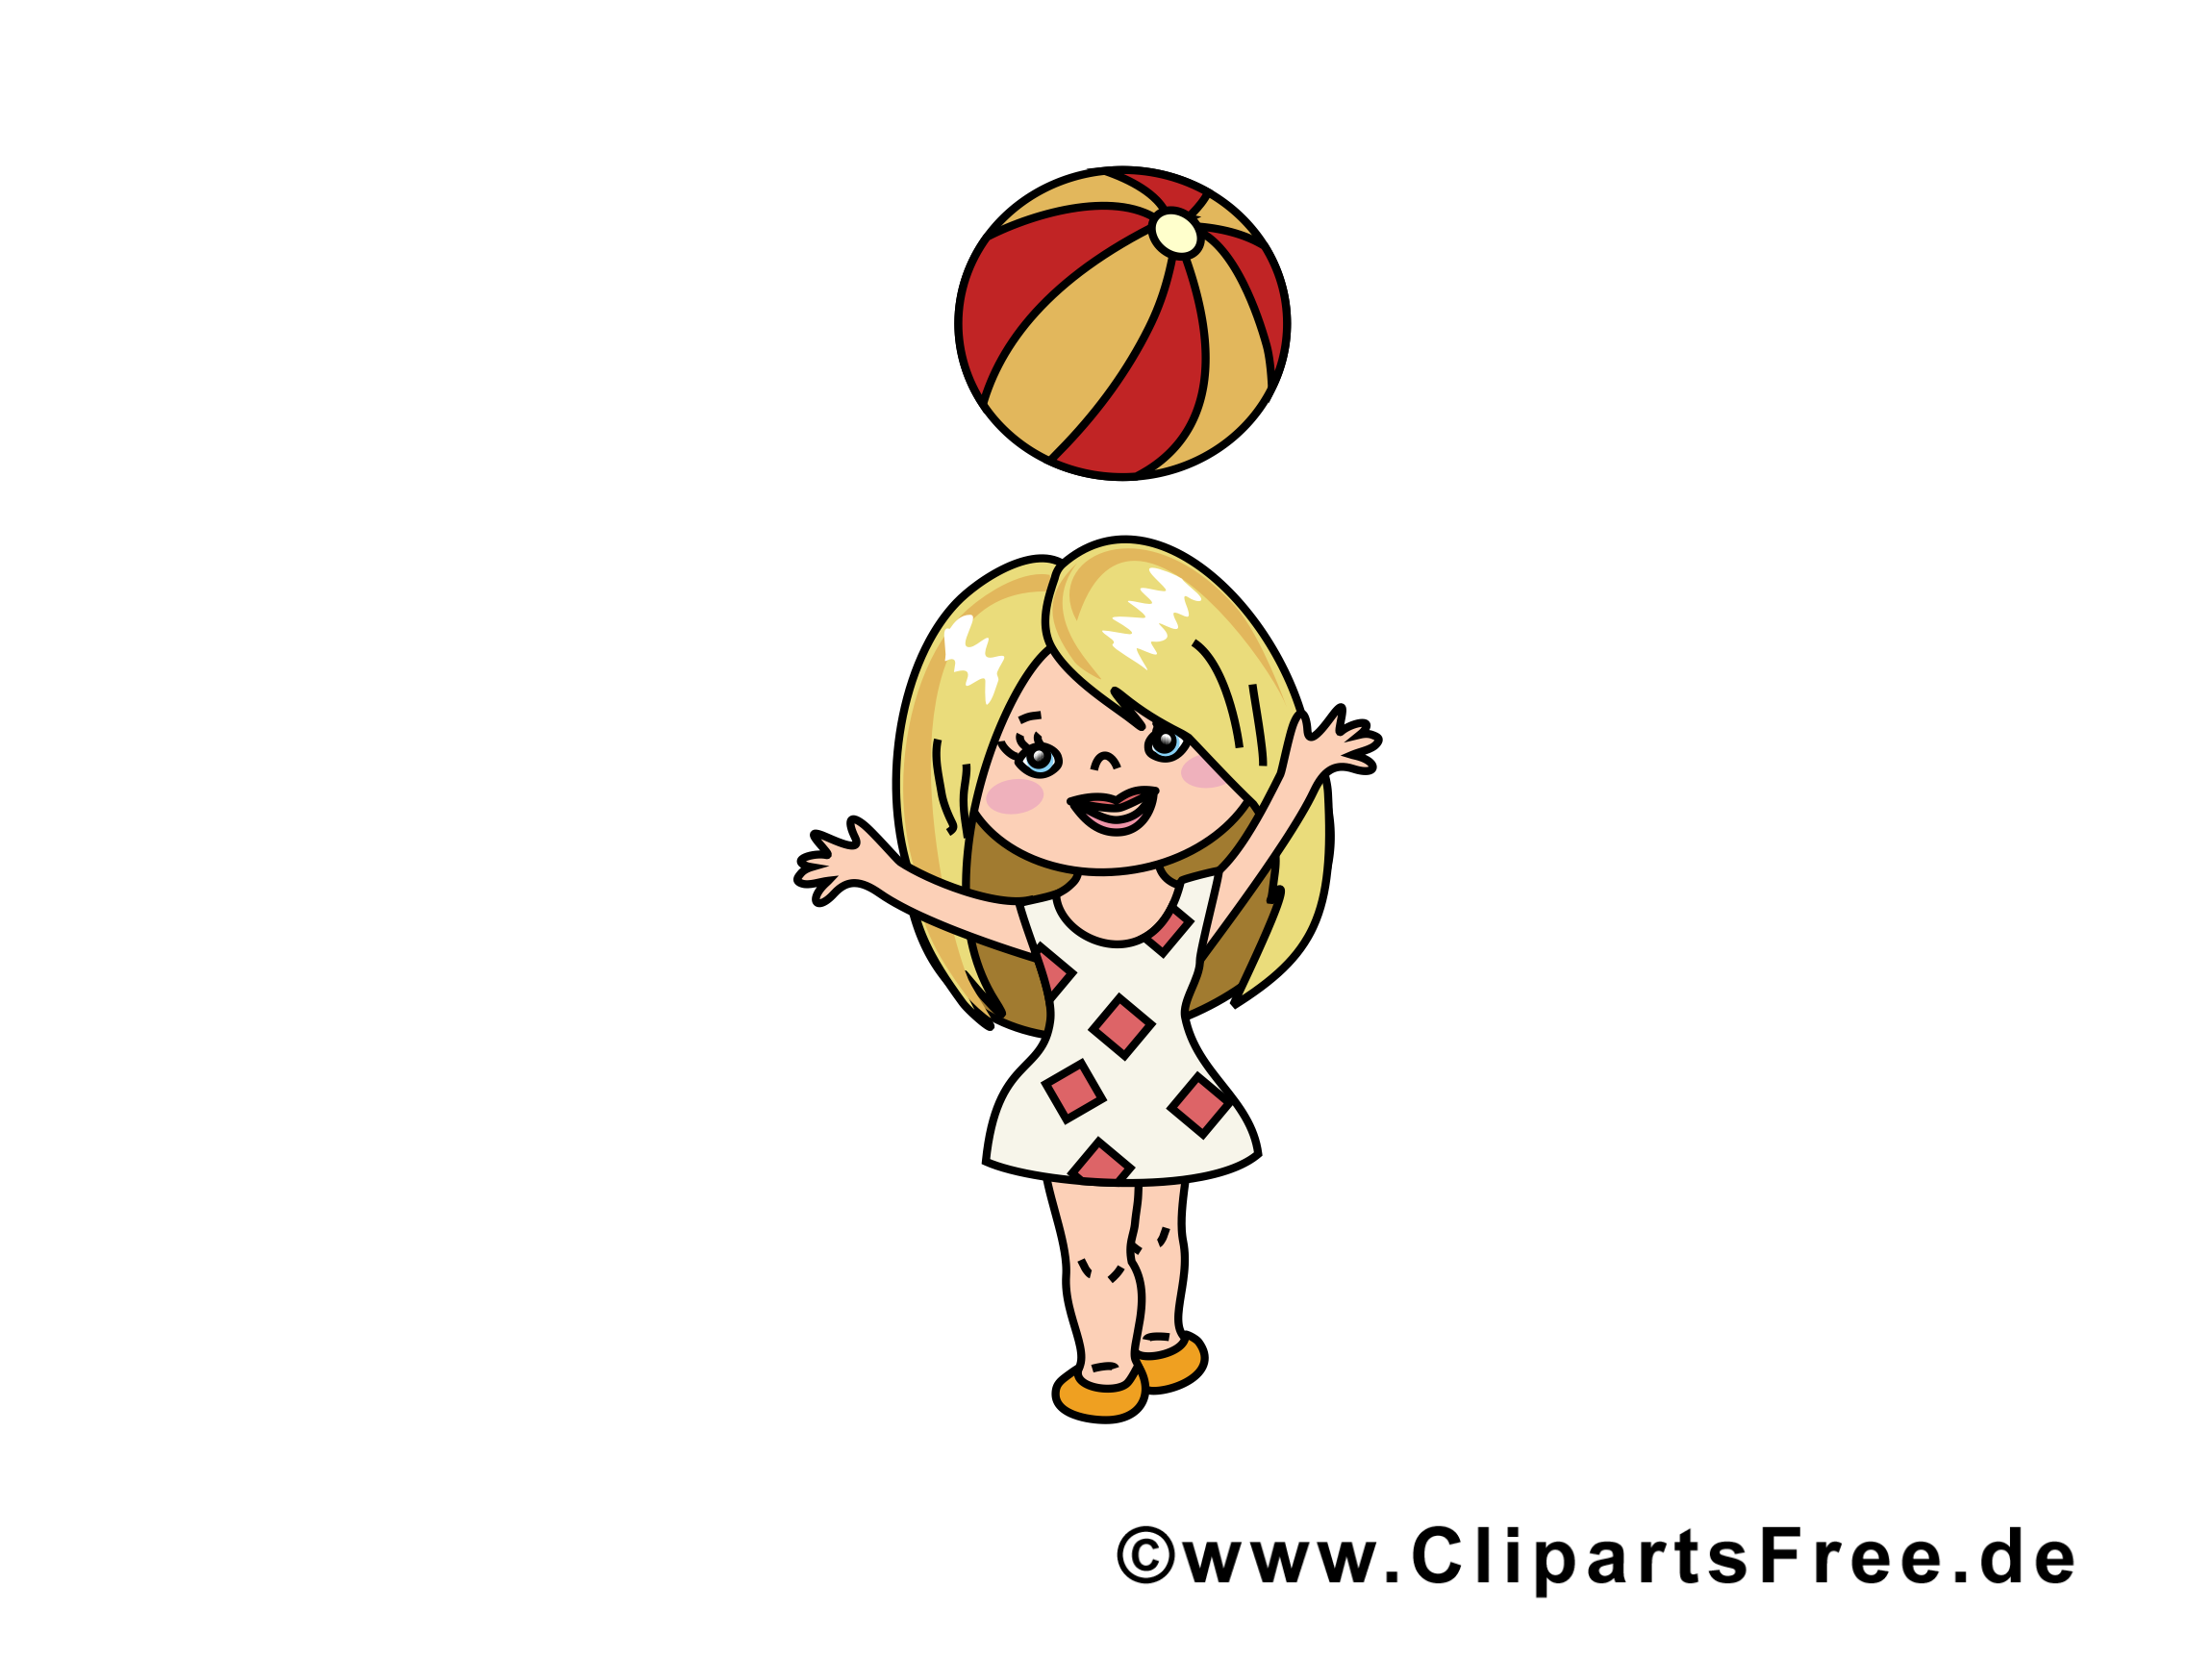 Balle clip arts gratuits - Petite fille illustrations